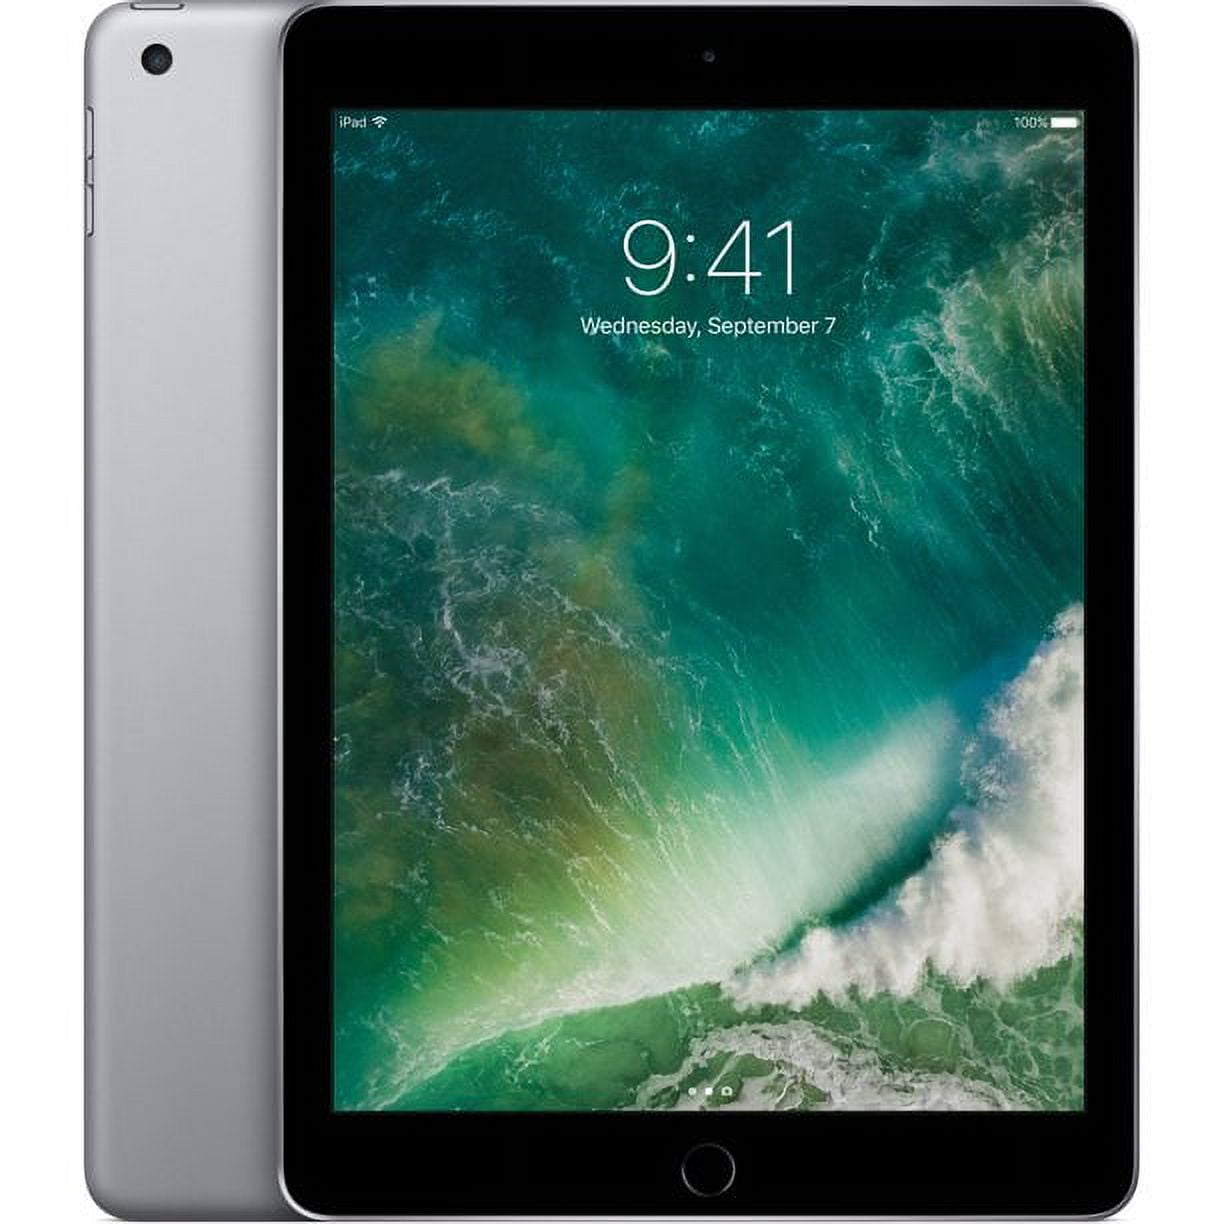 Restored Apple iPad 7th Gen 32GB Space Gray Wi-Fi 3F835LL/A (Refurbished)